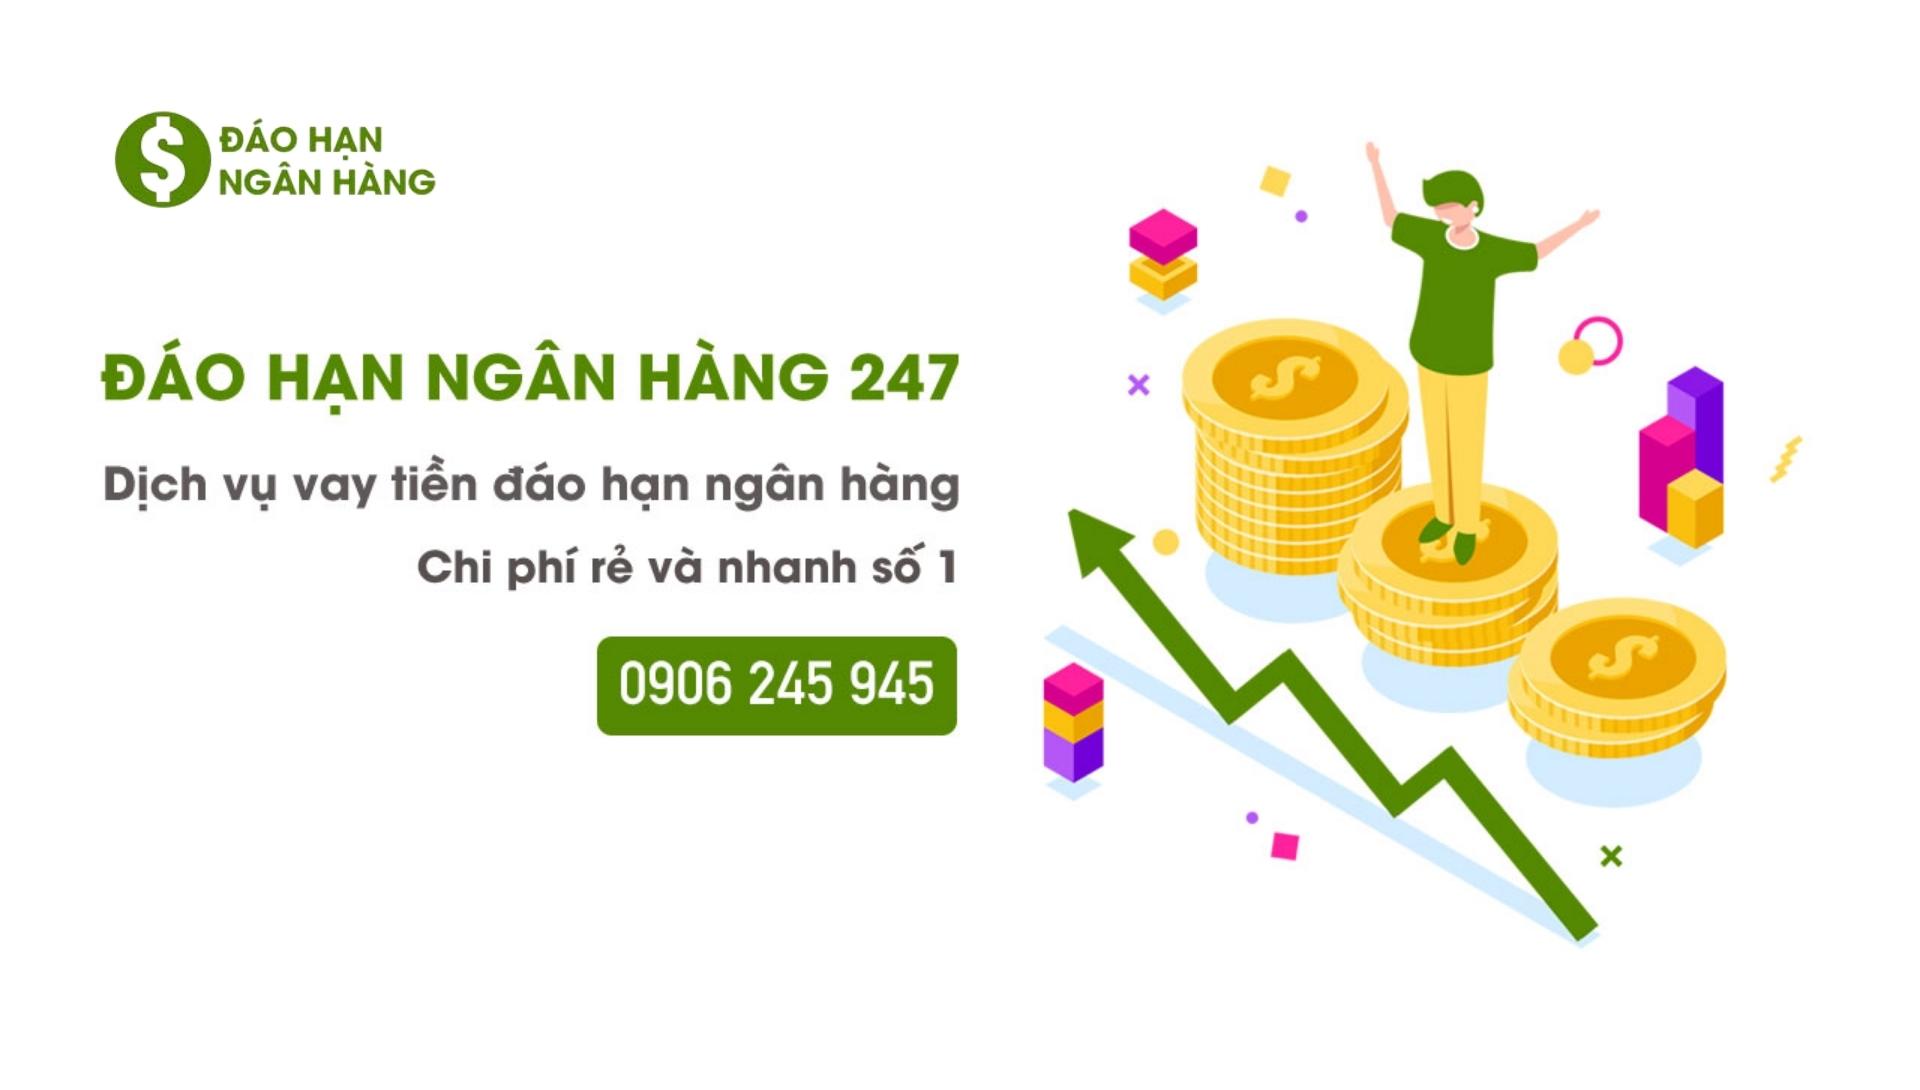 Daohannganhang247 cung cấp dịch vụ giải chấp đáo hạn ngân hàng